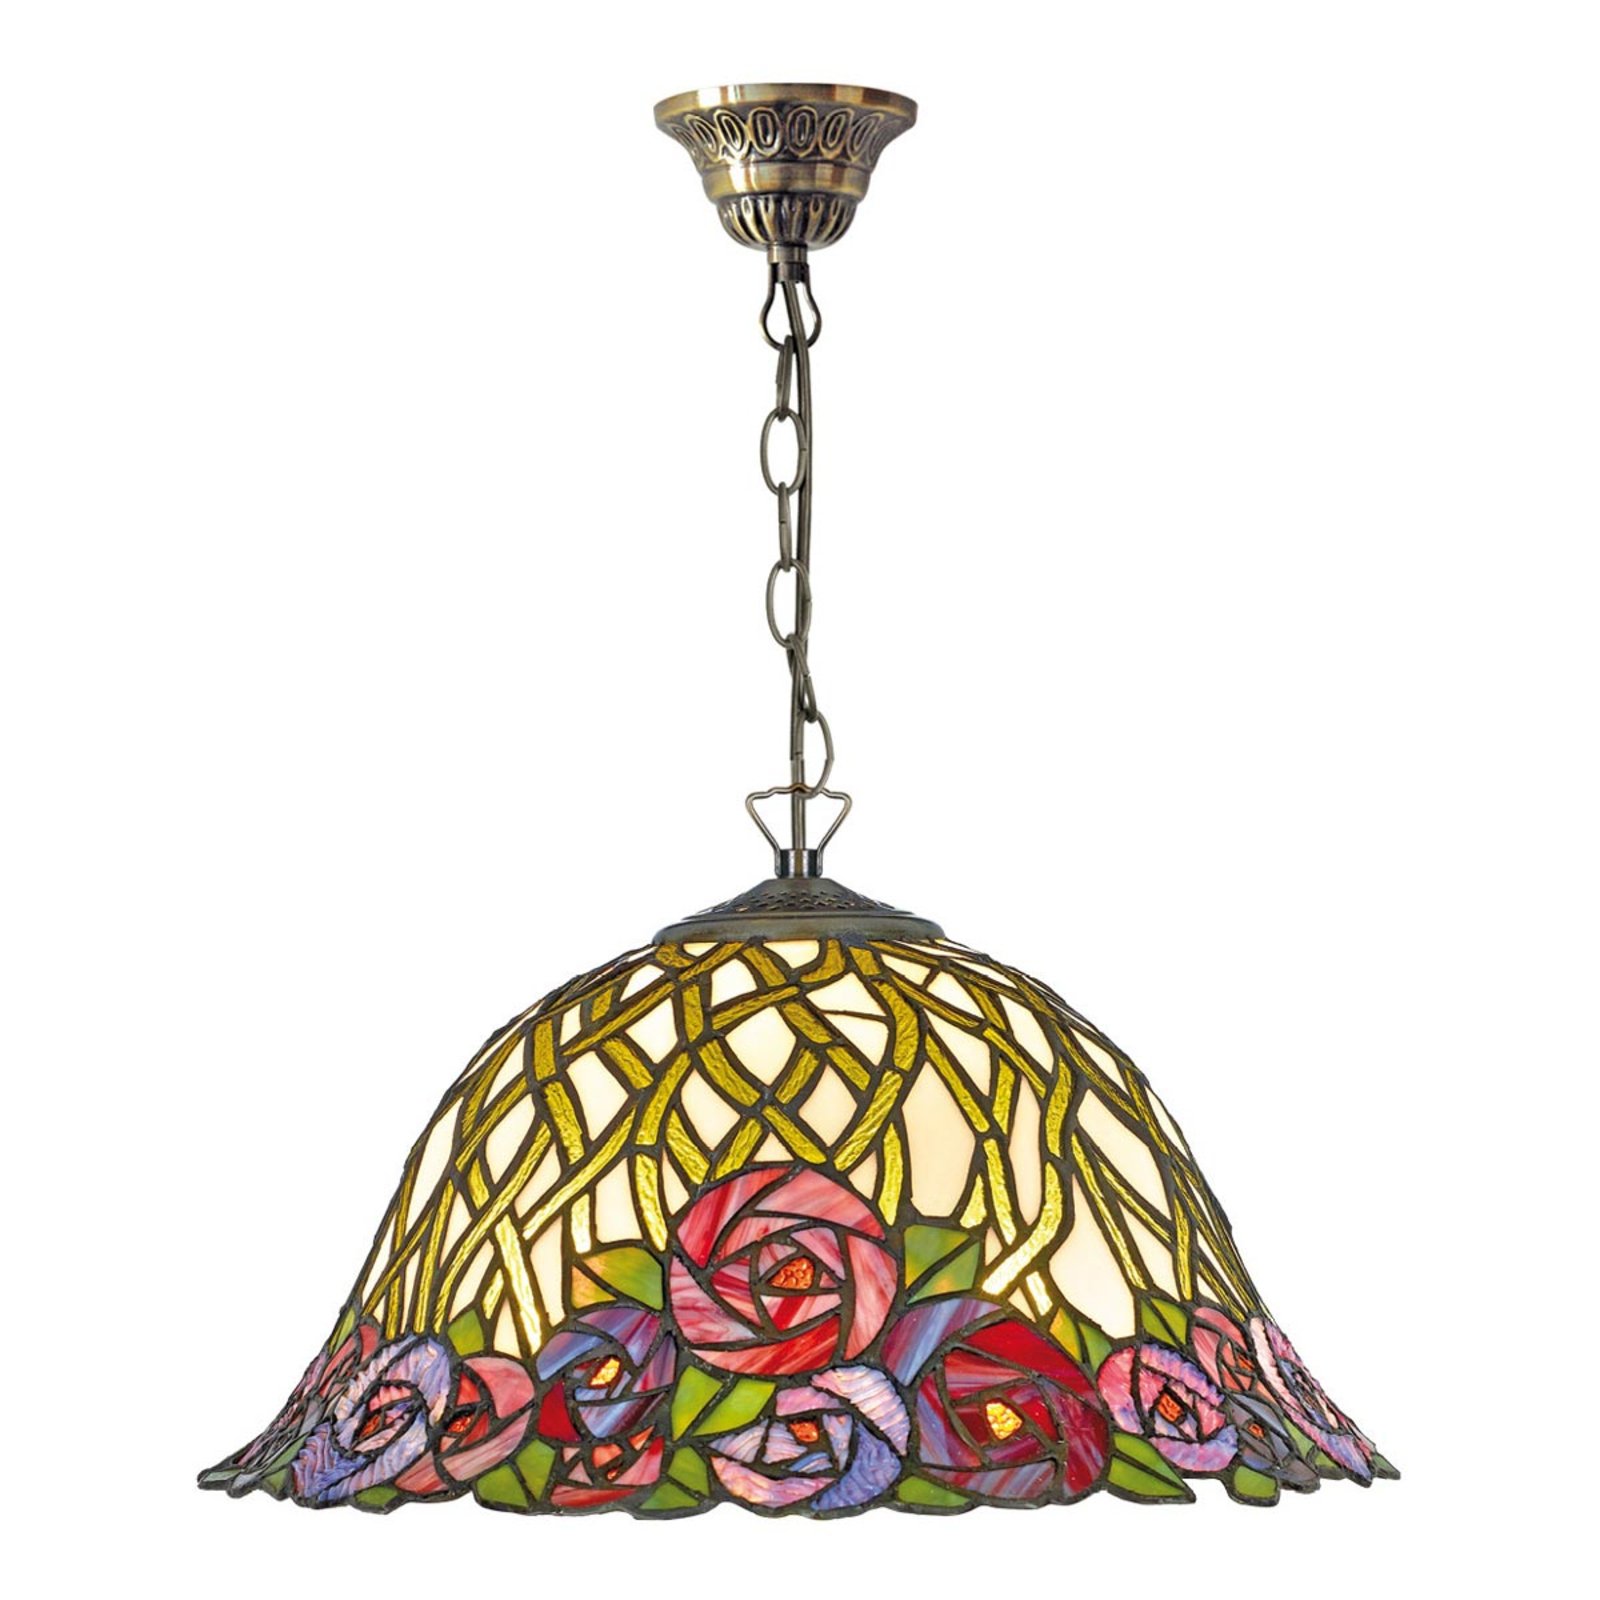 Hanglamp Melika in prachtig Tiffany design